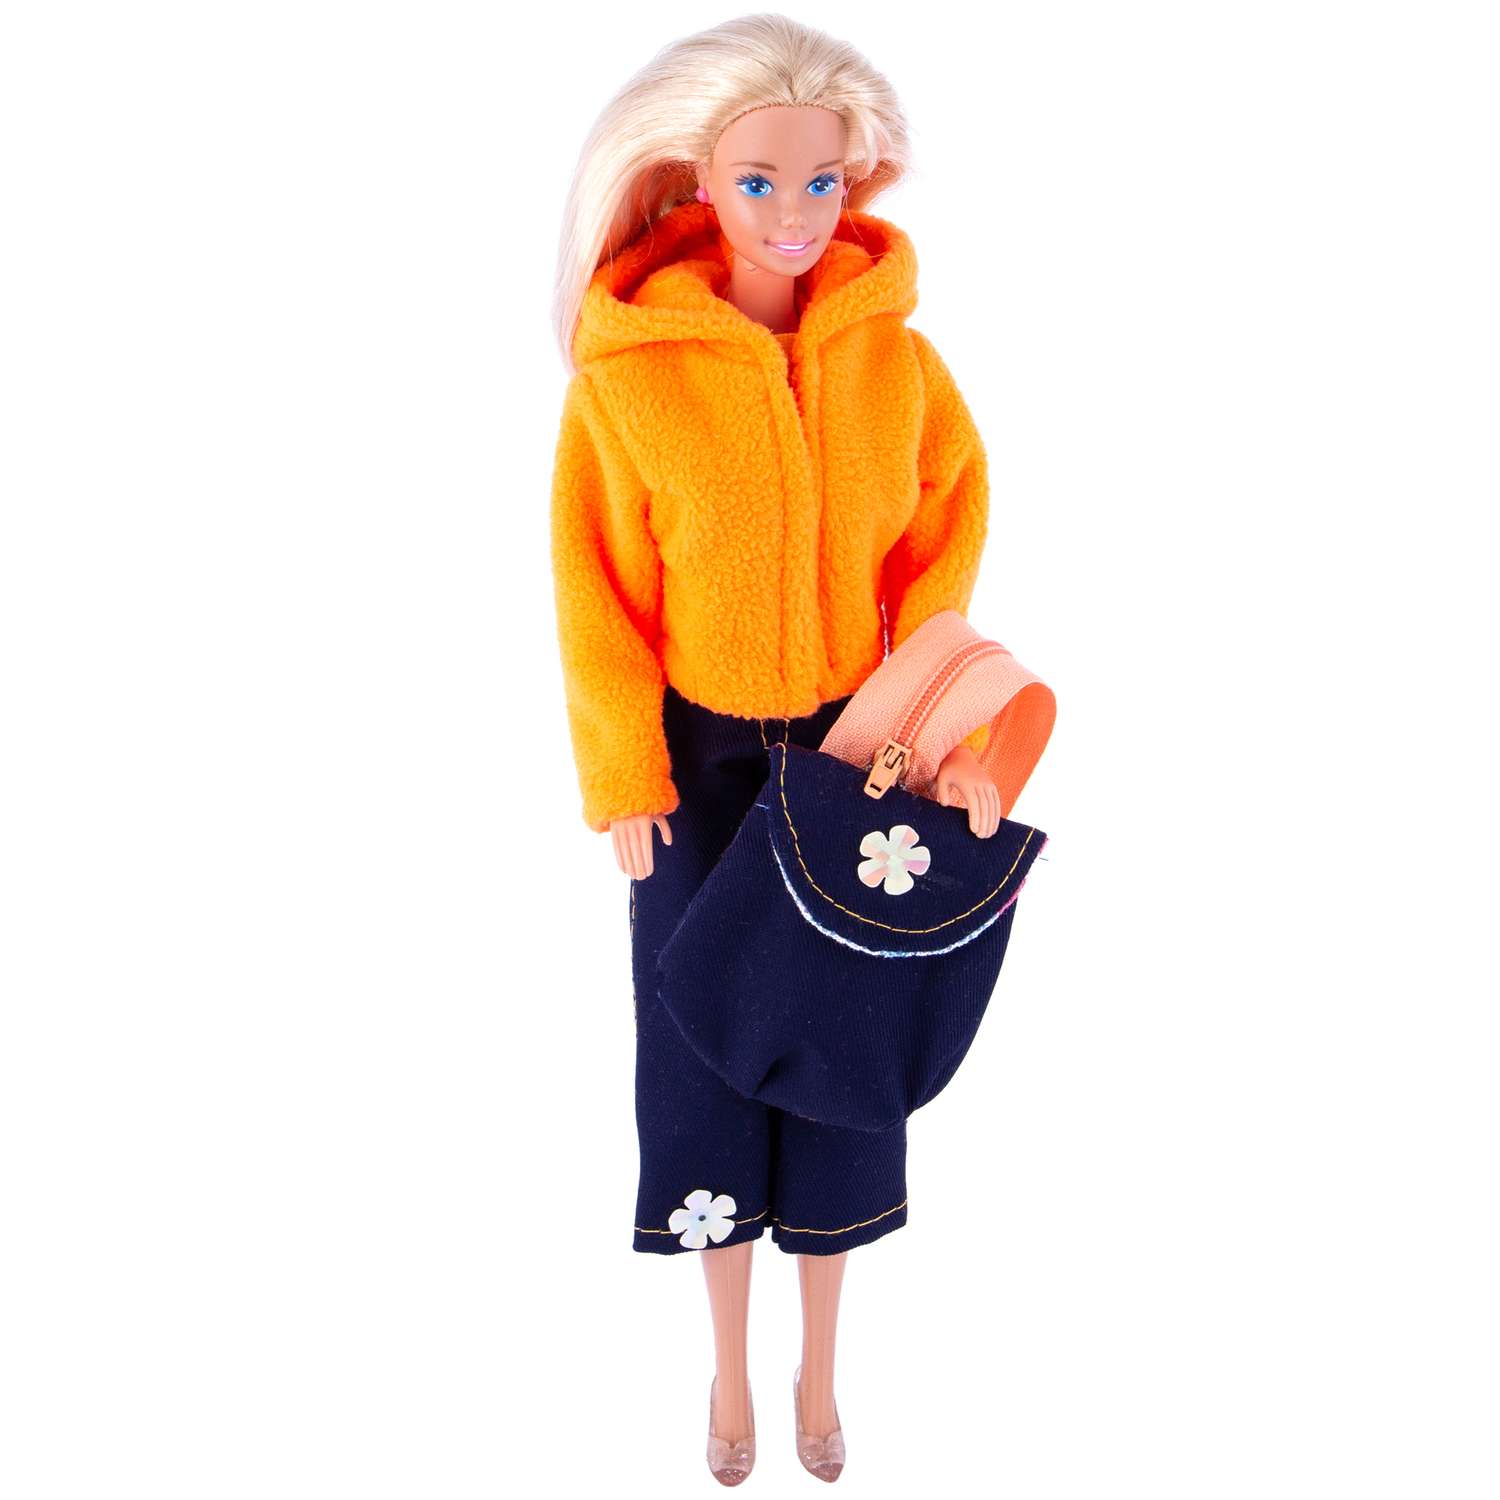 Набор одежды Модница для куклы 29 см: куртка штаны и рюкзак оранжевый 9999оранжевый&amp;синий - фото 3